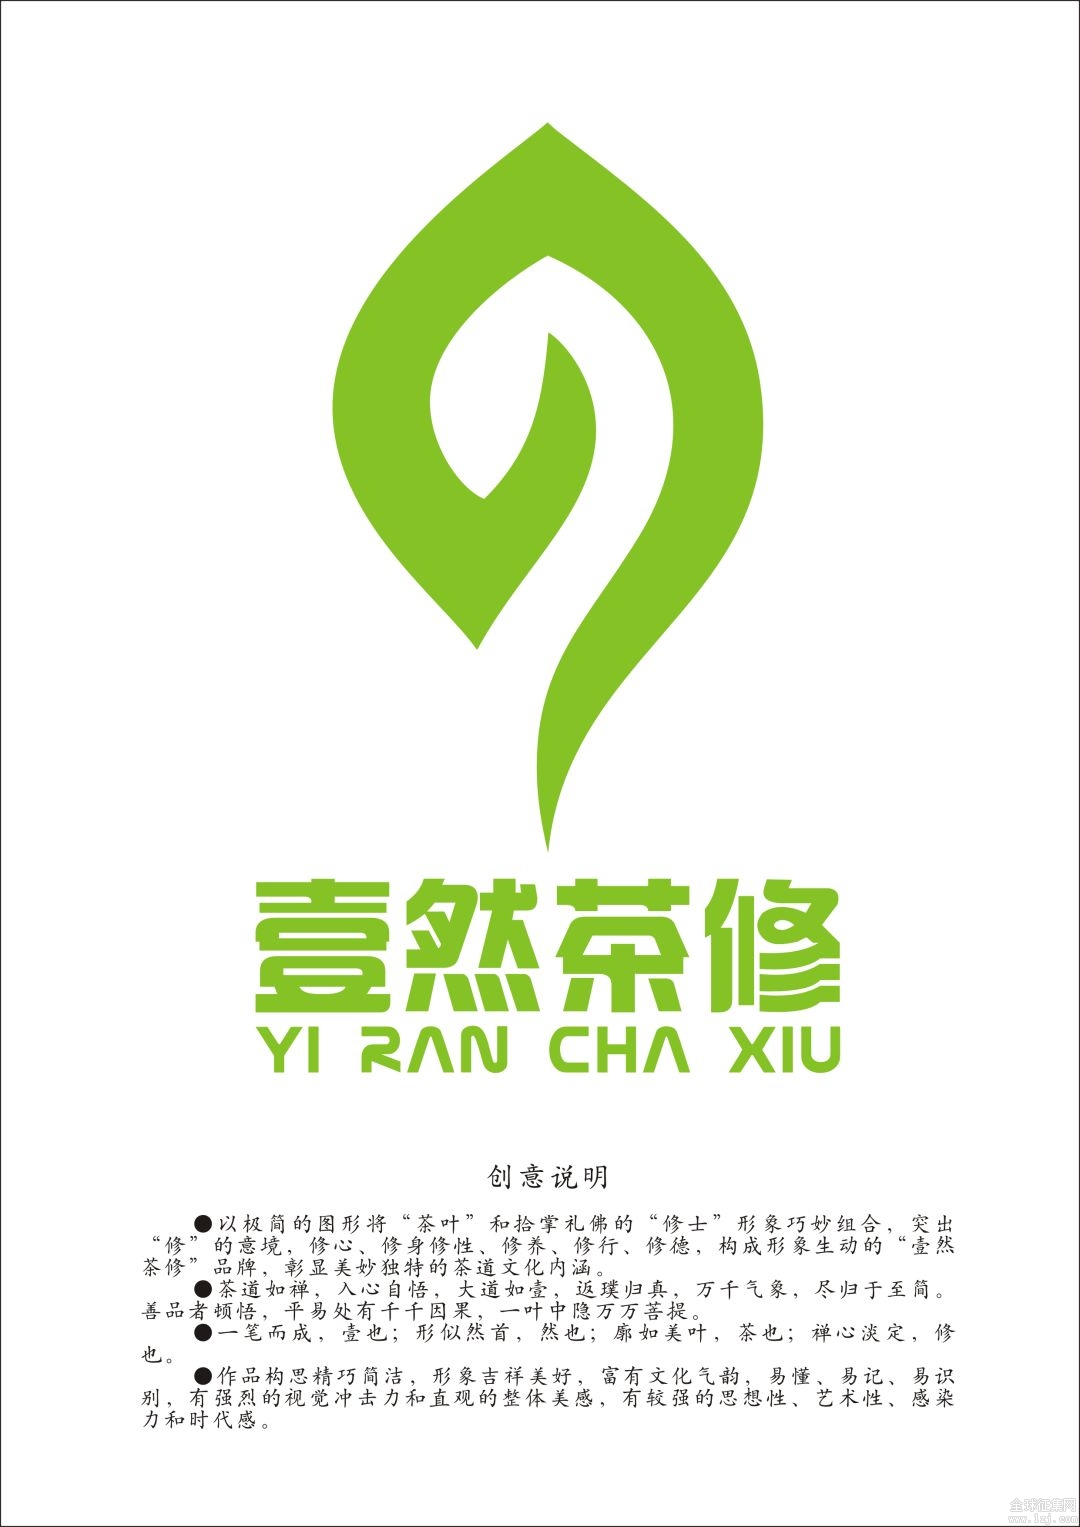 茶logo设计理念图片